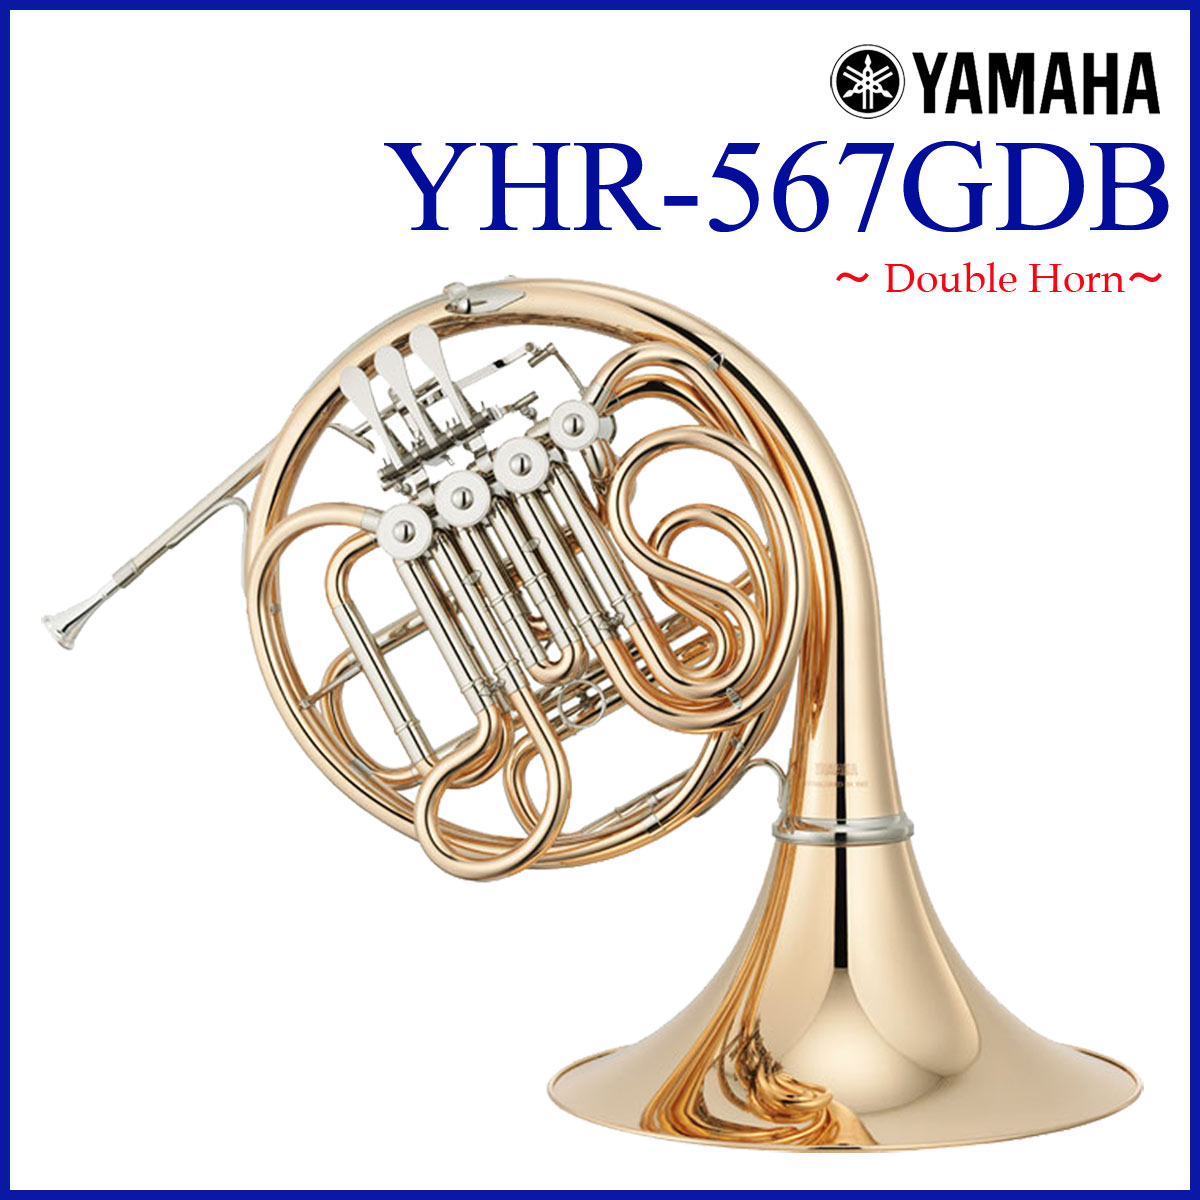 YAMAHA / YHR-567GDB フレンチホルン ダブル ゴールドブラス デタッチャブルベル 《出荷前調整》《5年保証》